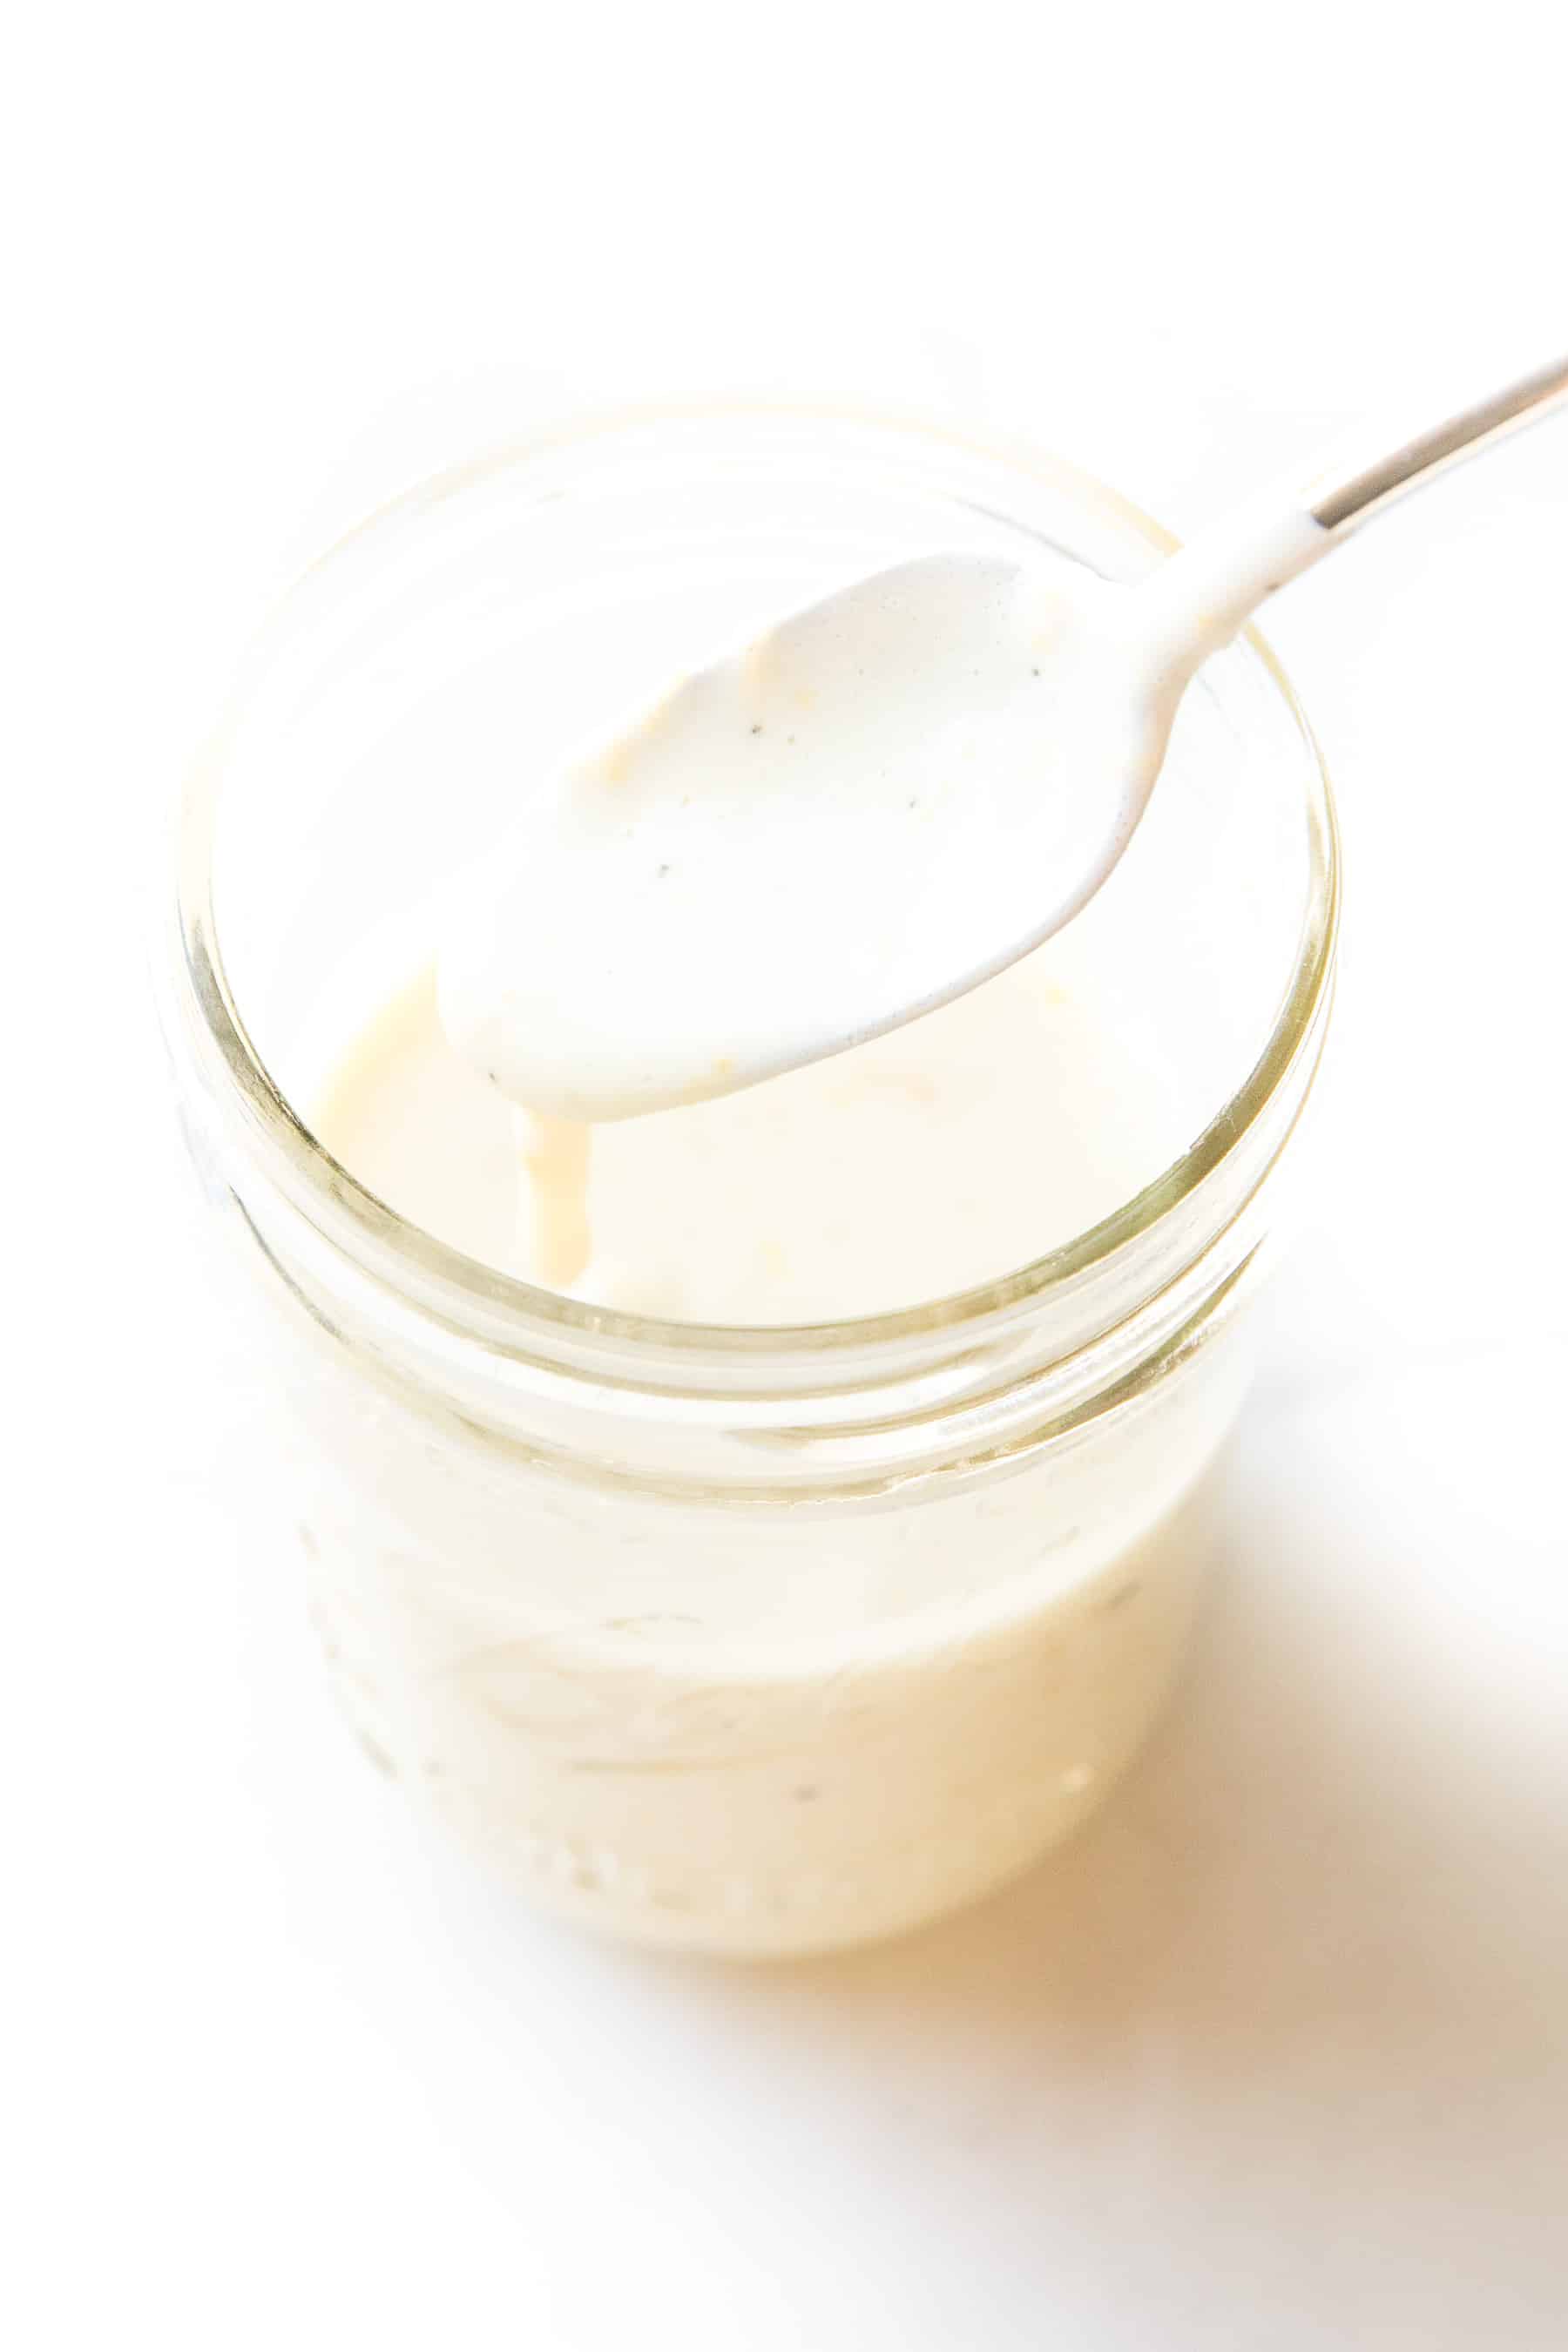 spoon pouring a white lemon garlic aioli sauce into a white mason jar on a white background